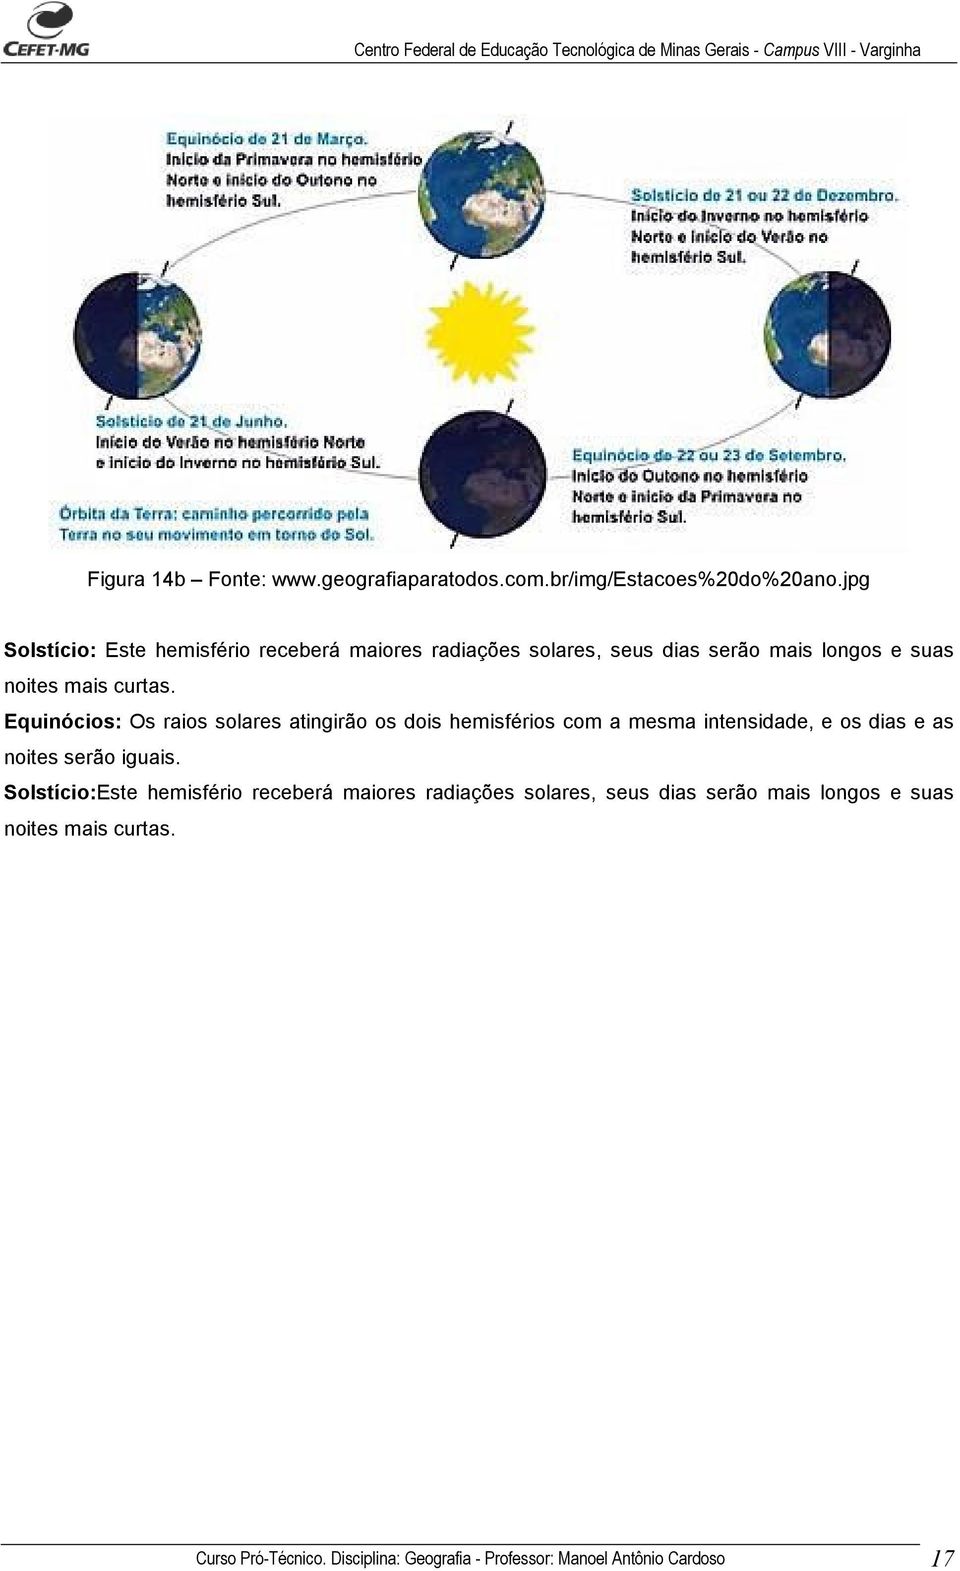 Equinócios: Os raios solares atingirão os dois hemisférios com a mesma intensidade, e os dias e as noites serão iguais.